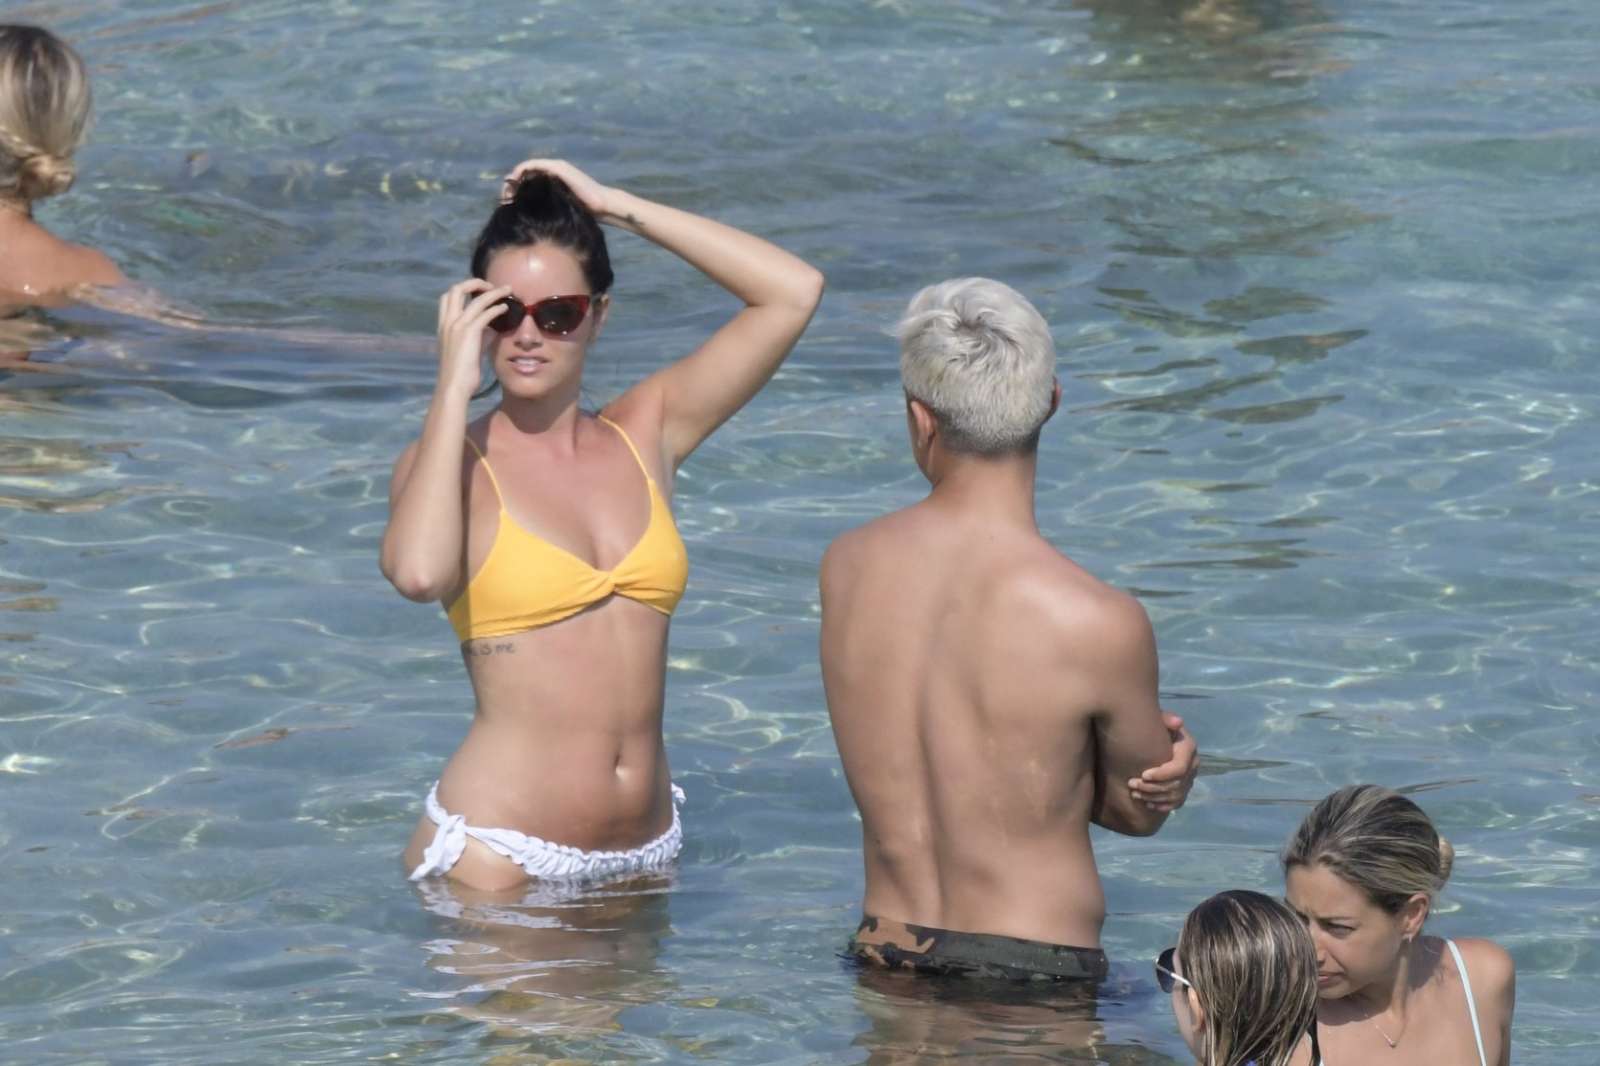 Oriana Sabatini in Bikini at the beach in Mykonos July 28, 2018 50